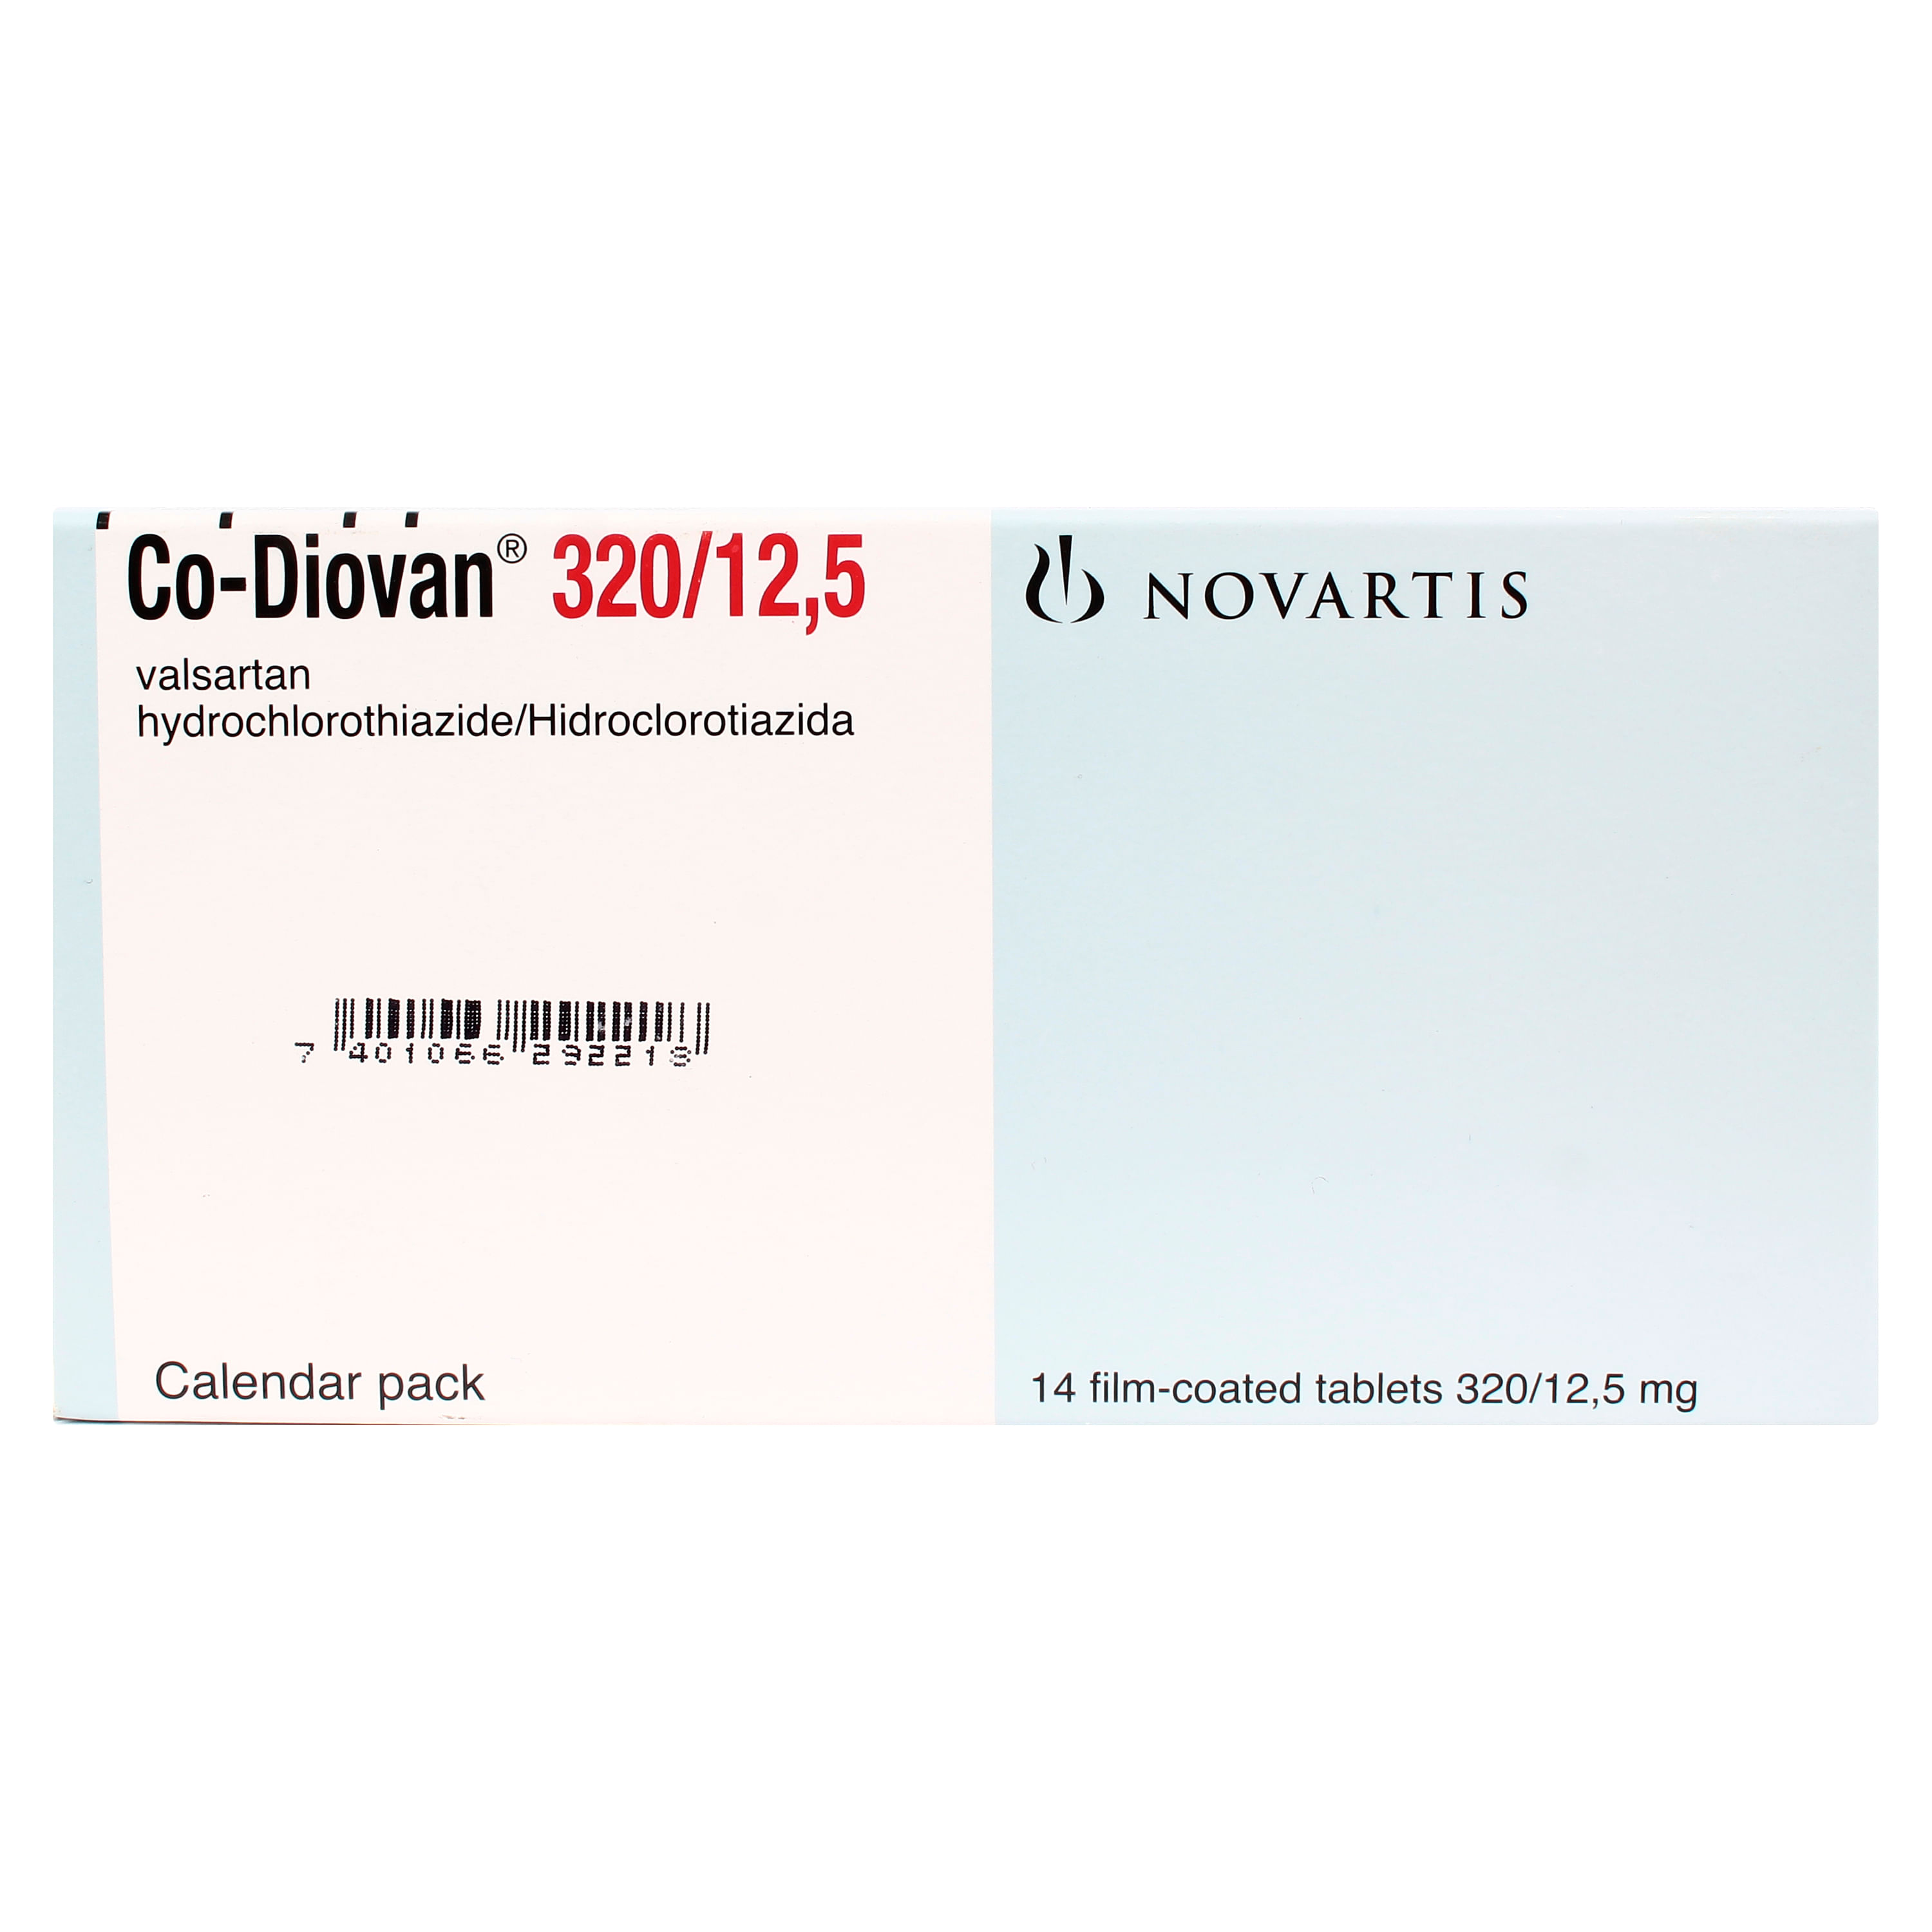 Co-Diovan-Novartis-320-12-5-Mg-X-14-Tablletas-1-28888